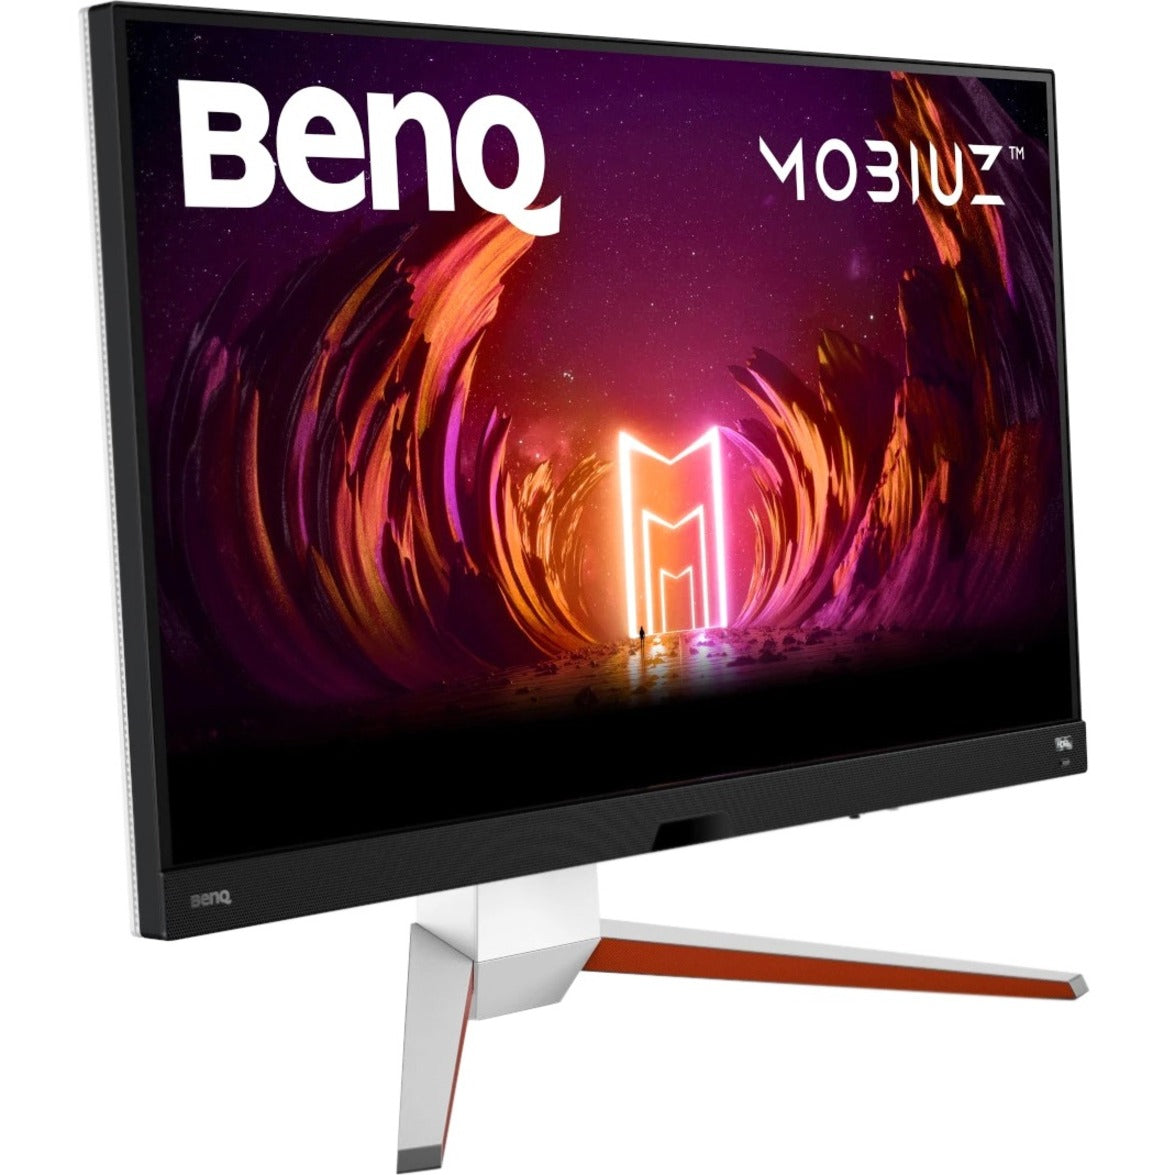 BenQ EX3210U MOBIUZ 32" 4K UHD Gaming Monitor, FreeSync Premium Pro, HDRi, USB Hub